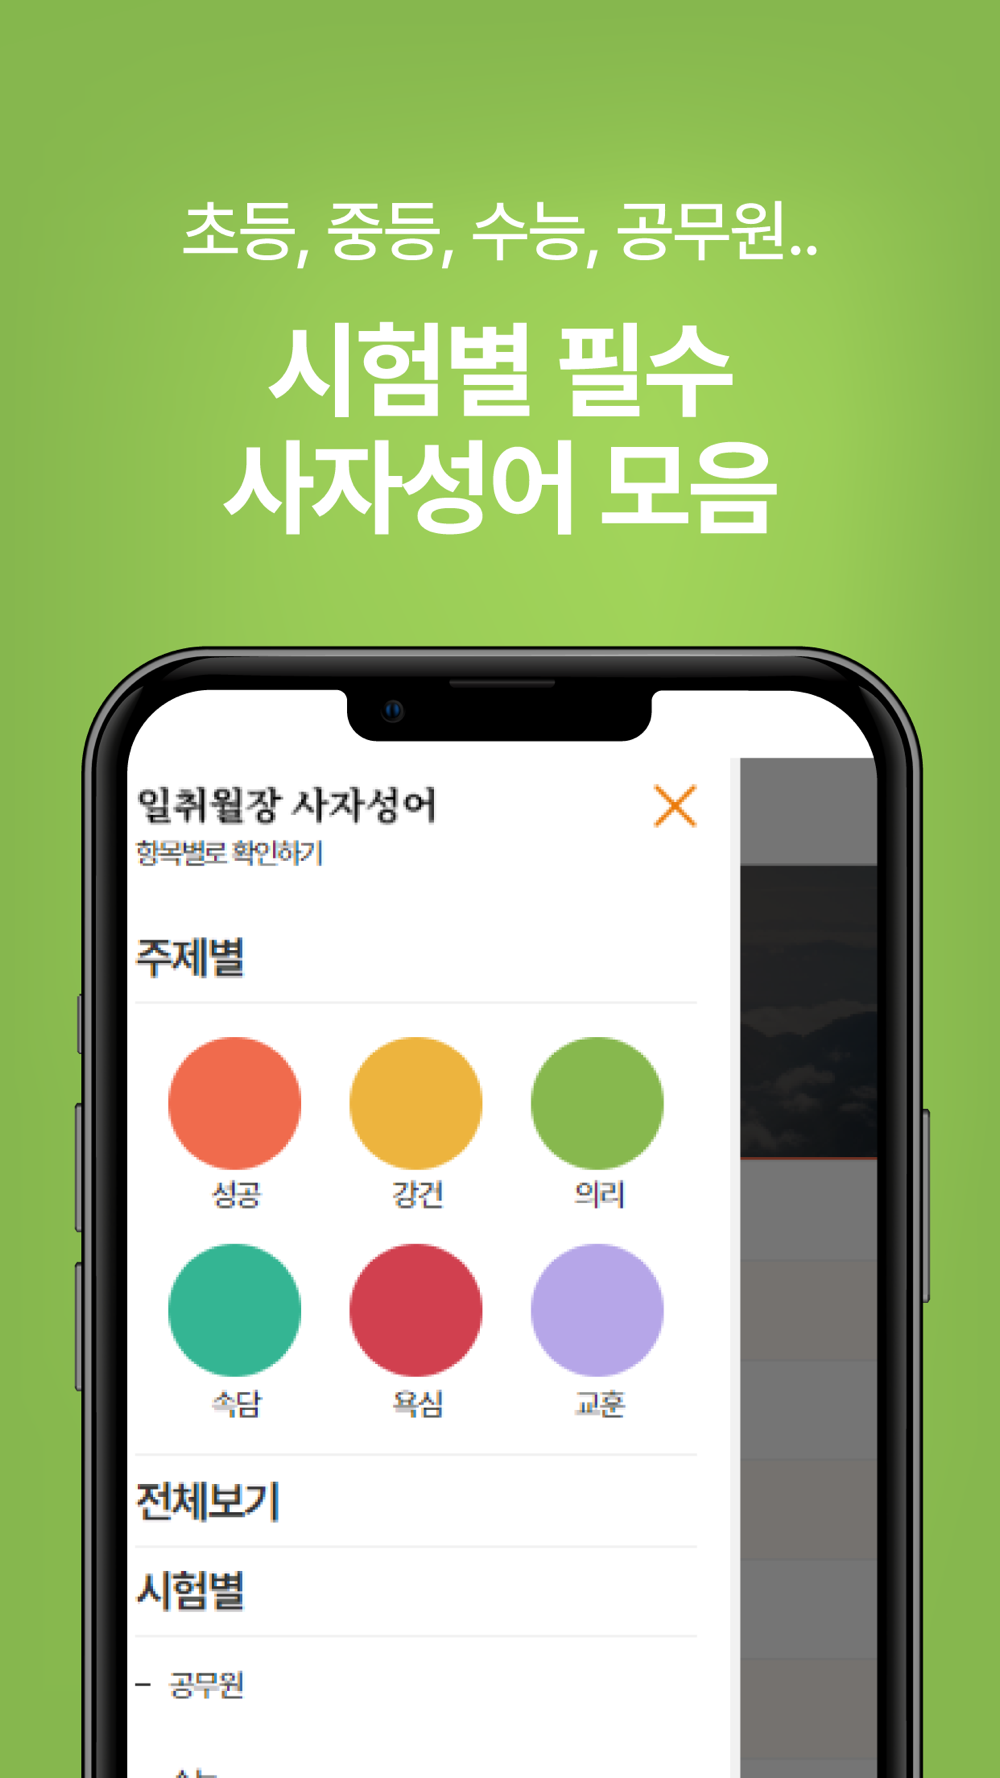 일취월장 사자성어 - 수능 공무원 초등 중등 고등 필수 Free Download App For Iphone - Steprimo.Com